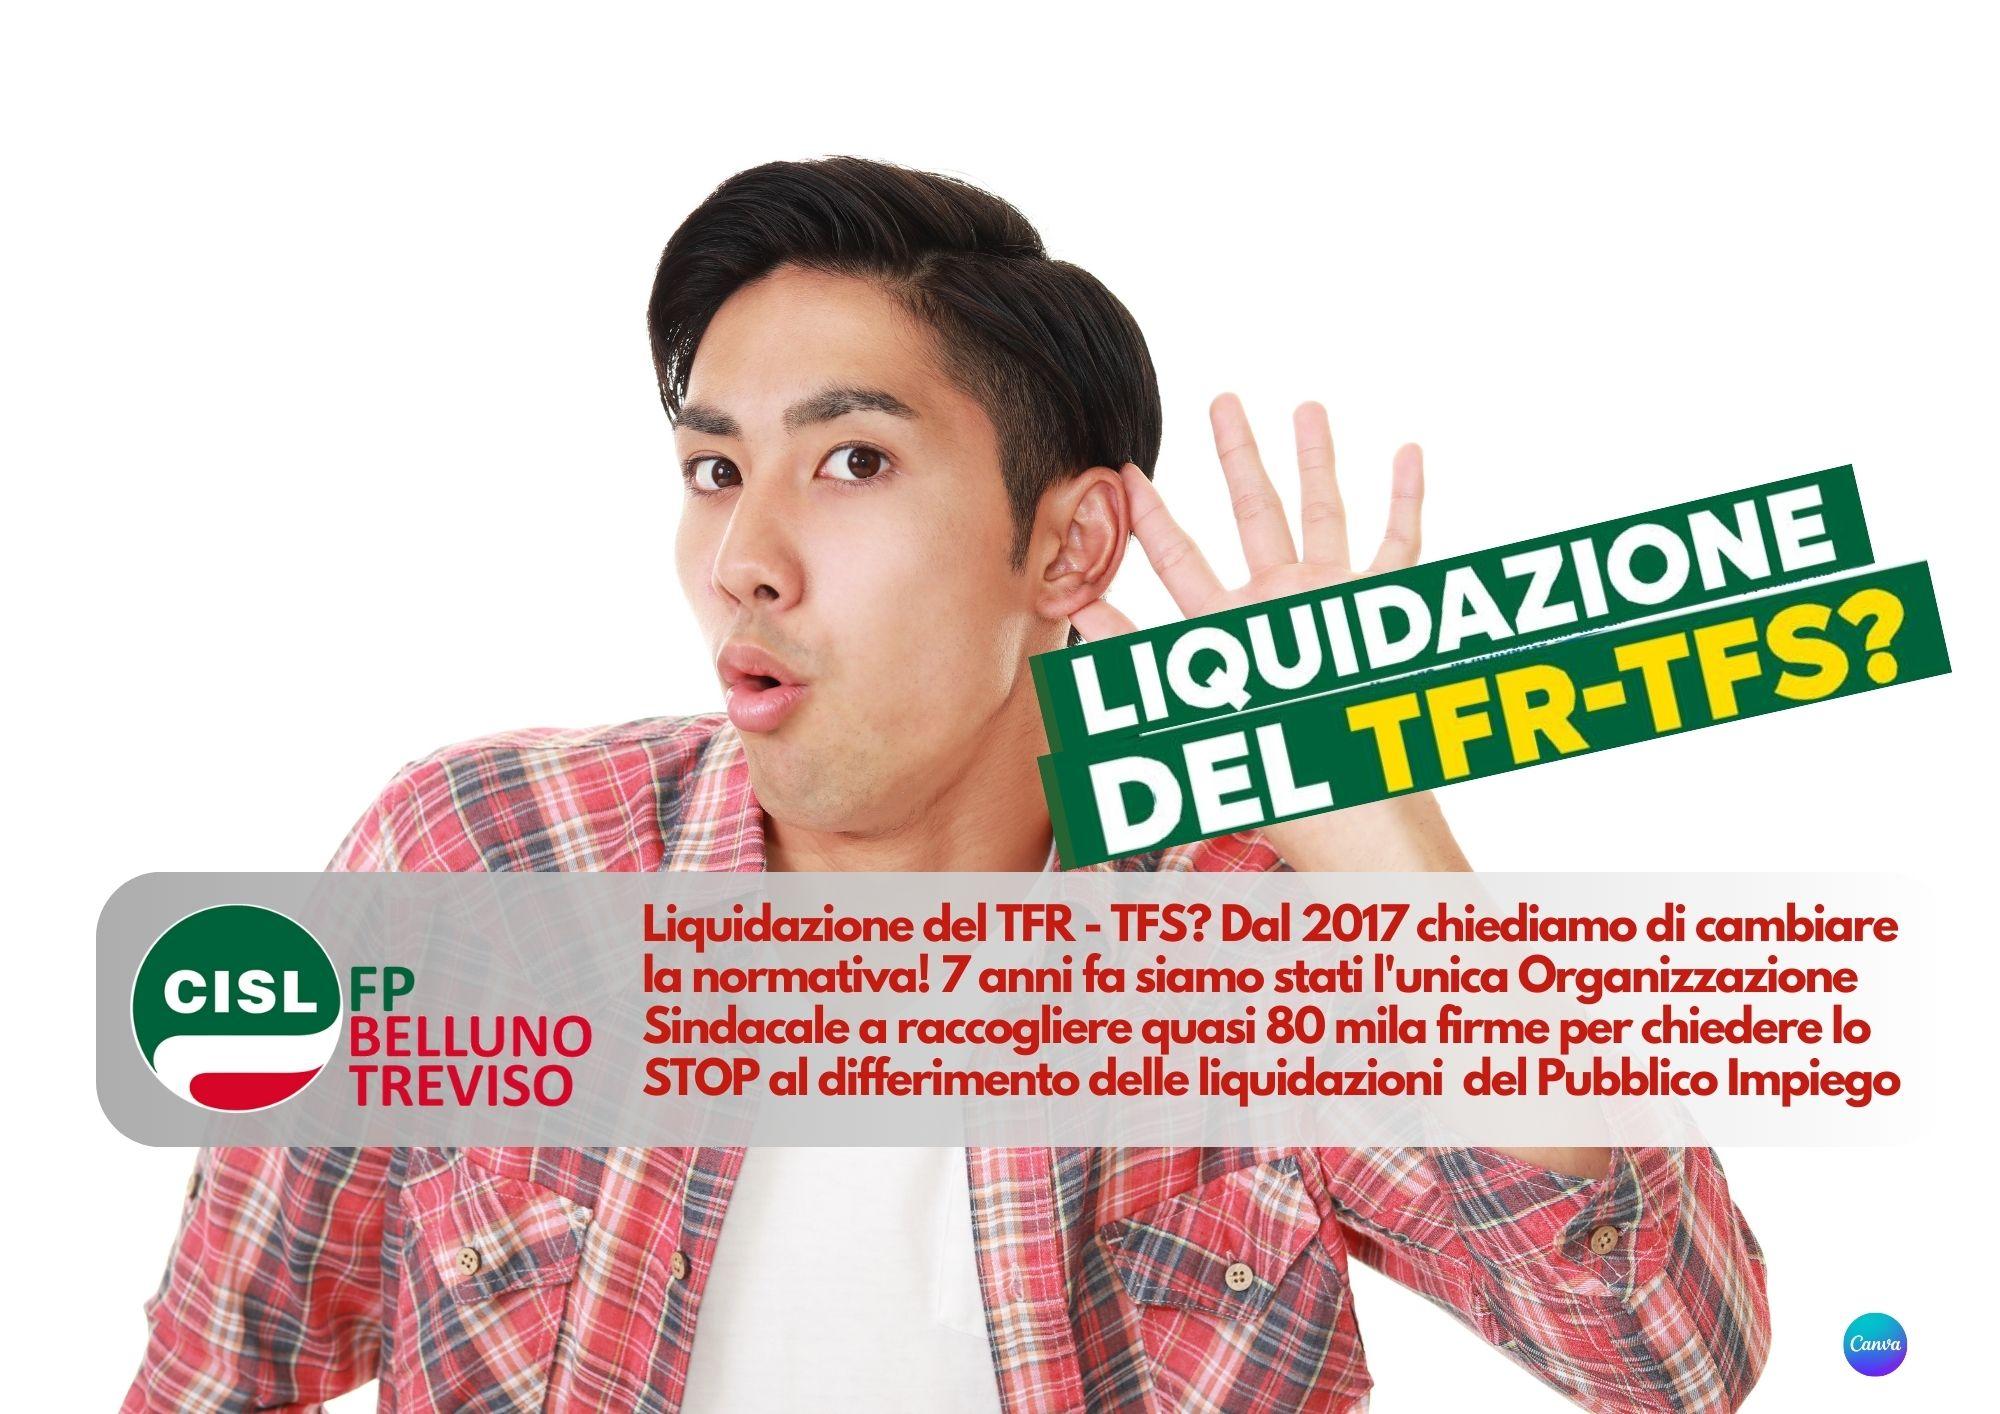 CISL FP Belluno Treviso. Liquidazione del TFR - TFS? Dal 2017 chiediamo di cambiare la normativa!